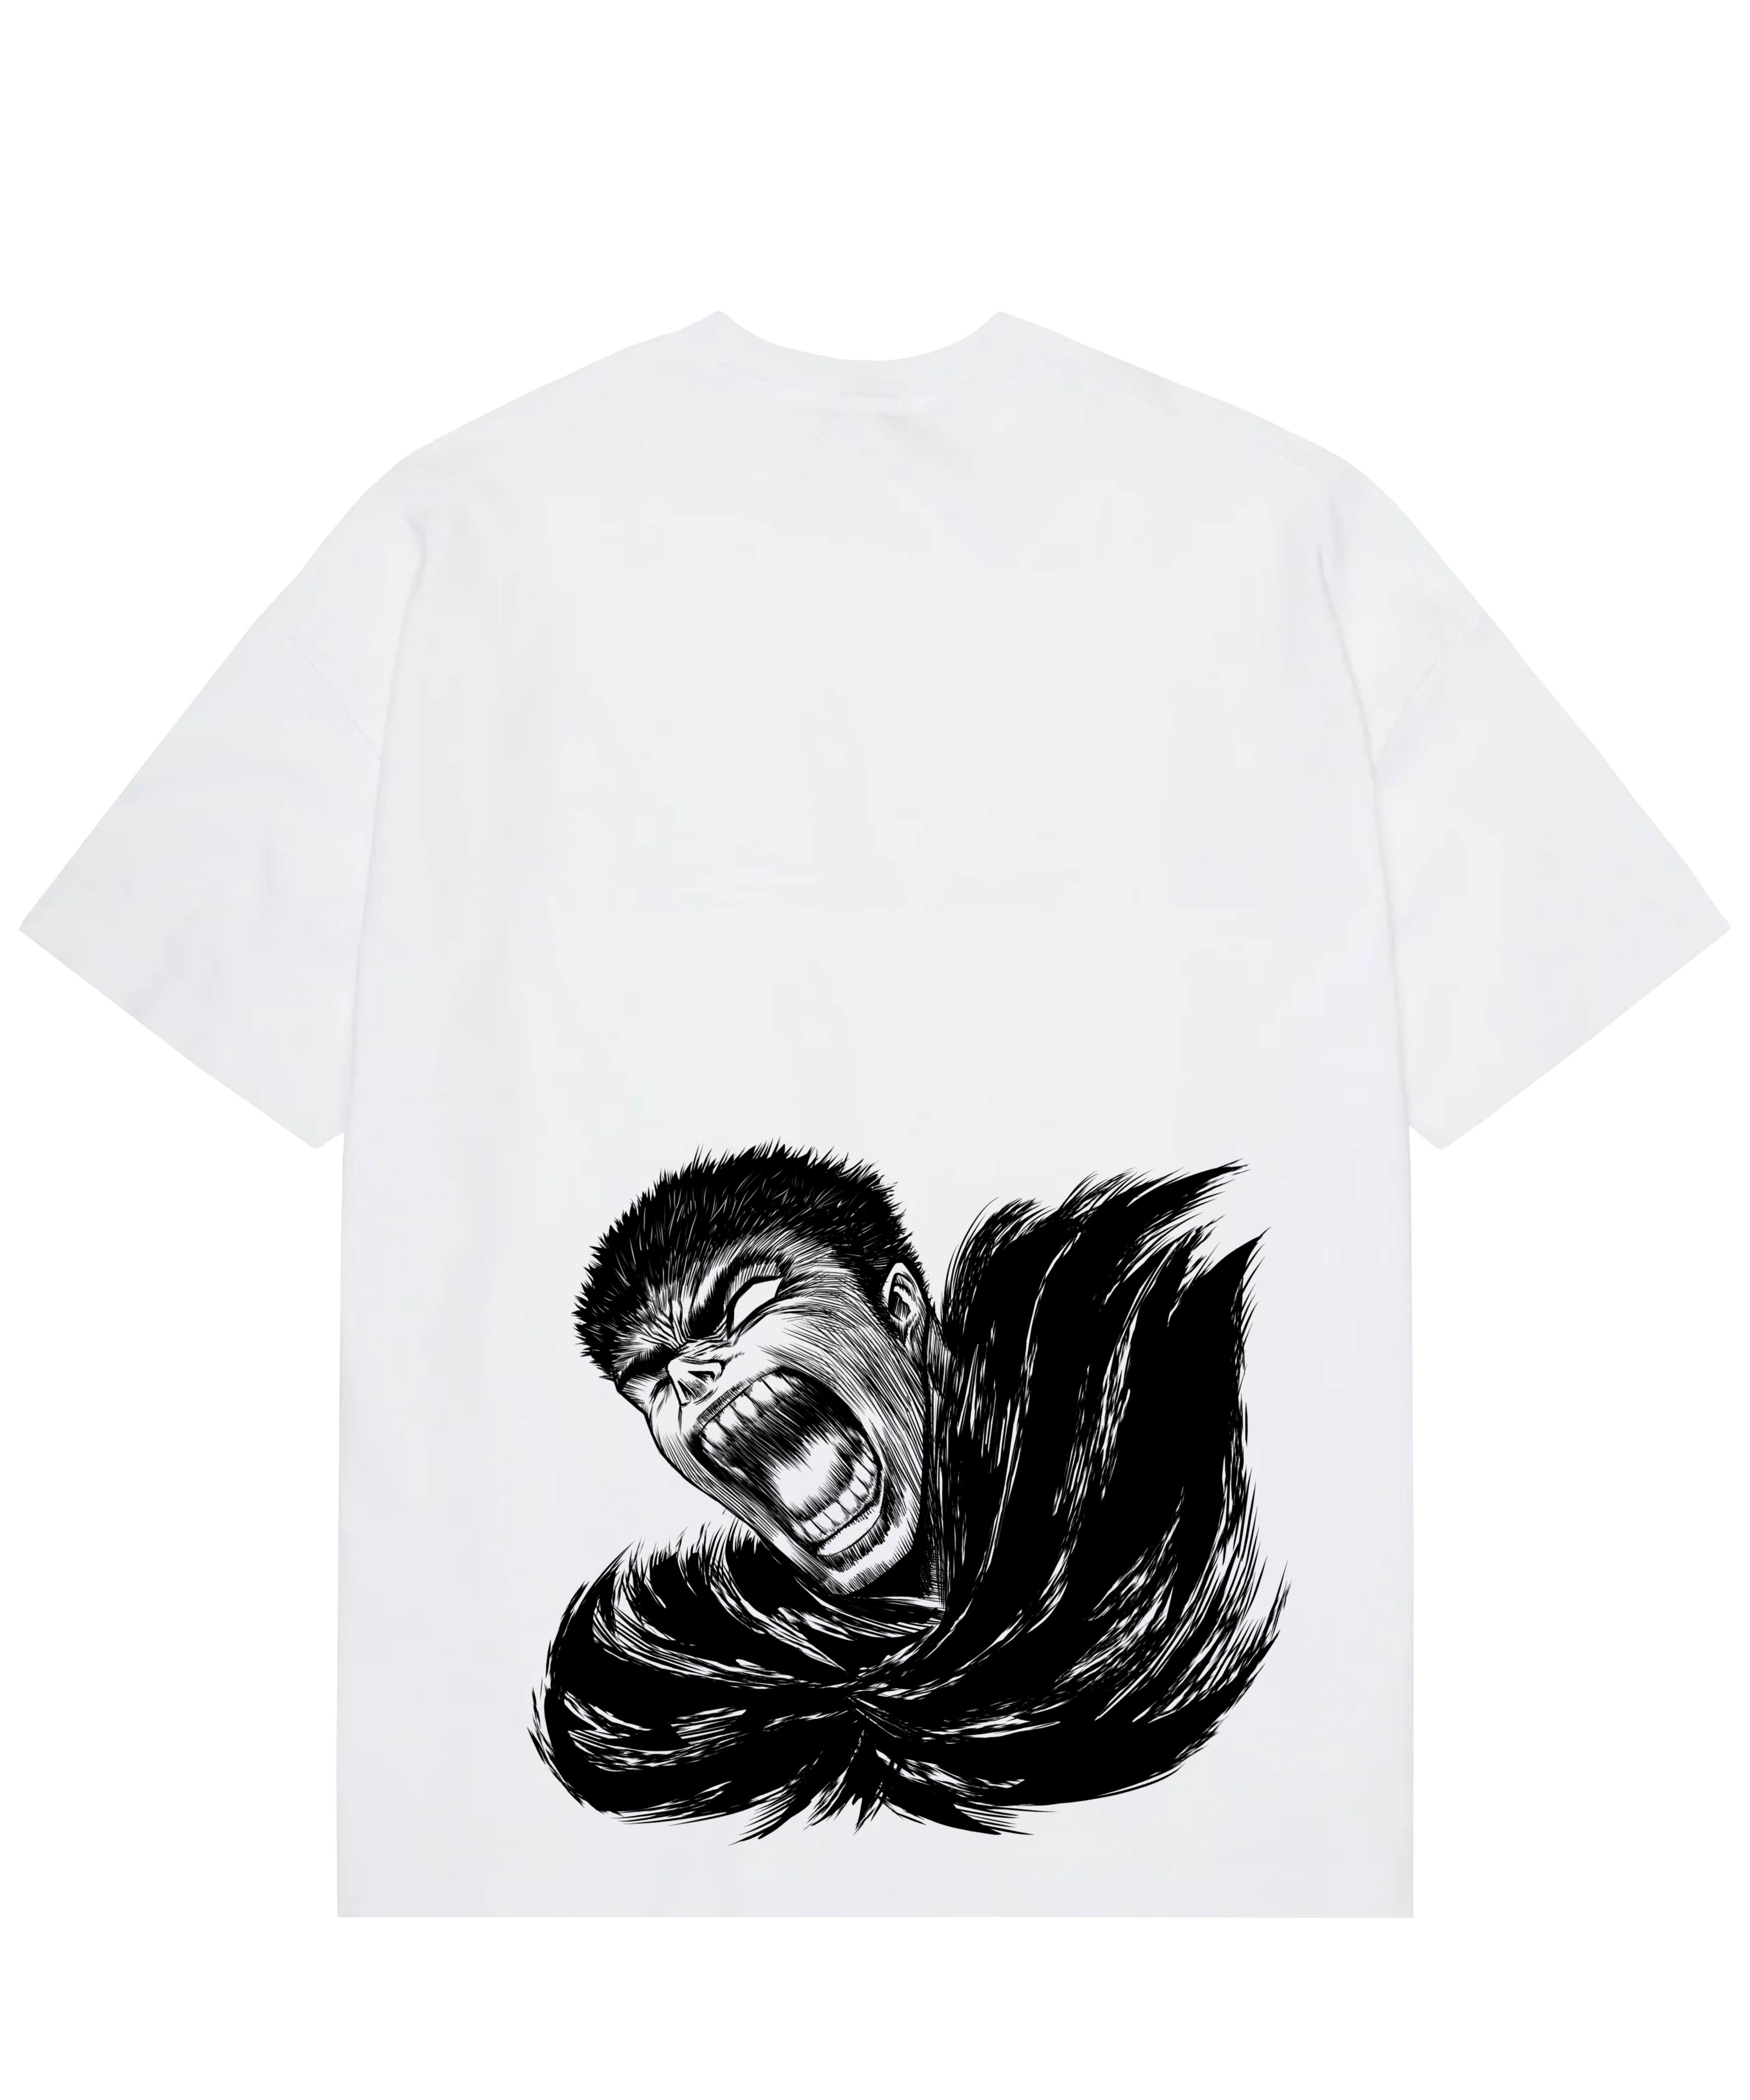 "Guts X Rage - Berserk" T-shirt oversize